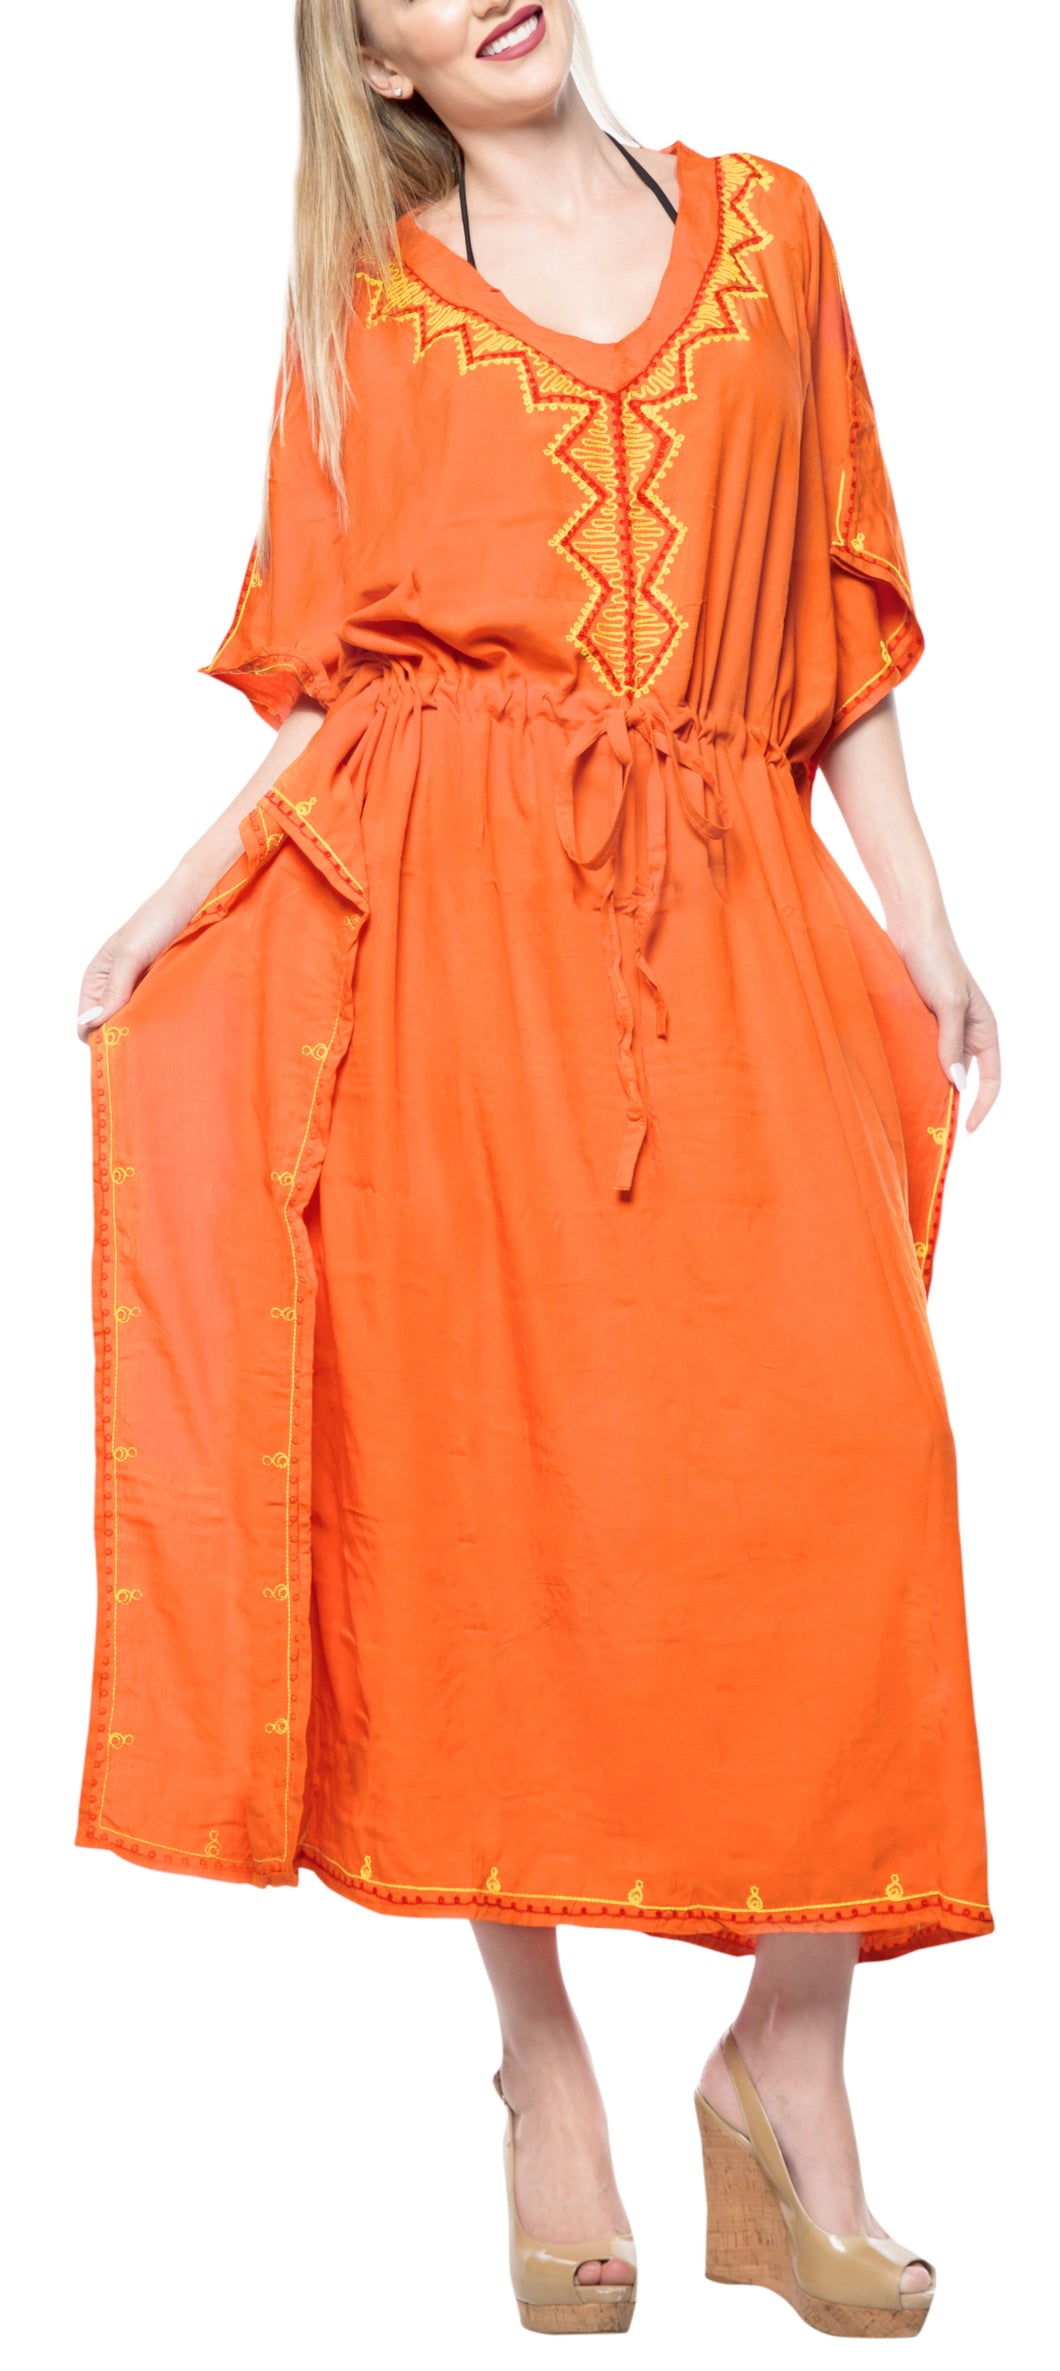 la-leela-rayon-solid-caftan-beach-dress-nightwear-women-orange_4074-osfm-12-20w